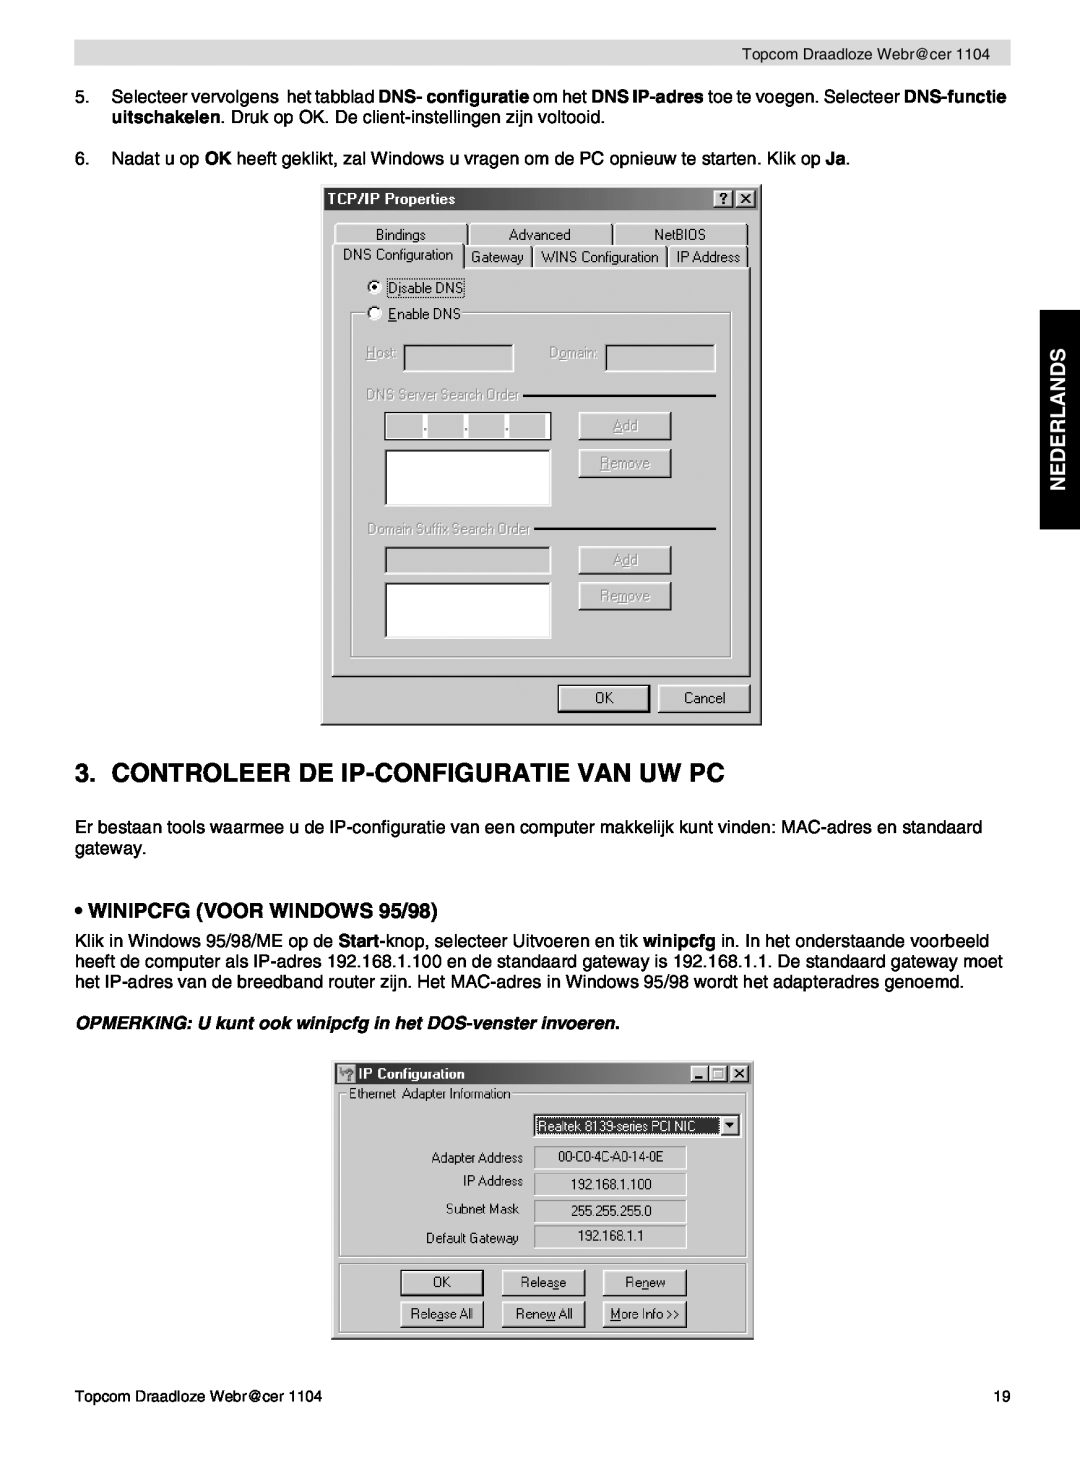 Topcom 1104 manual do utilizador Controleer De Ip-Configuratie Van Uw Pc, Nederlands, WINIPCFG VOOR WINDOWS 95/98 